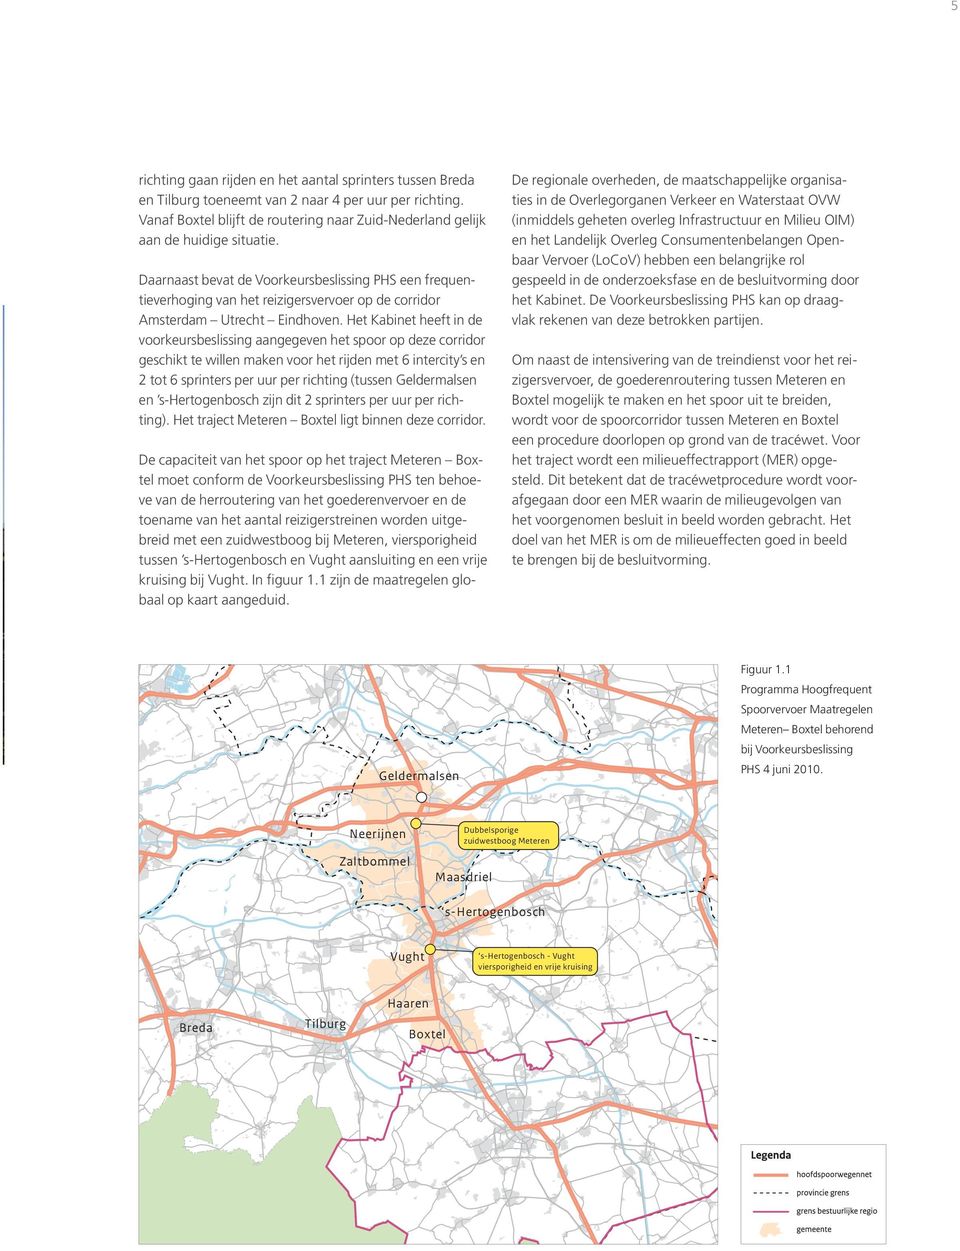 Daarnaast bevat de Voorkeursbeslissing PHS een frequentieverhoging van het reizigersvervoer op de corridor Amsterdam Utrecht Eindhoven.